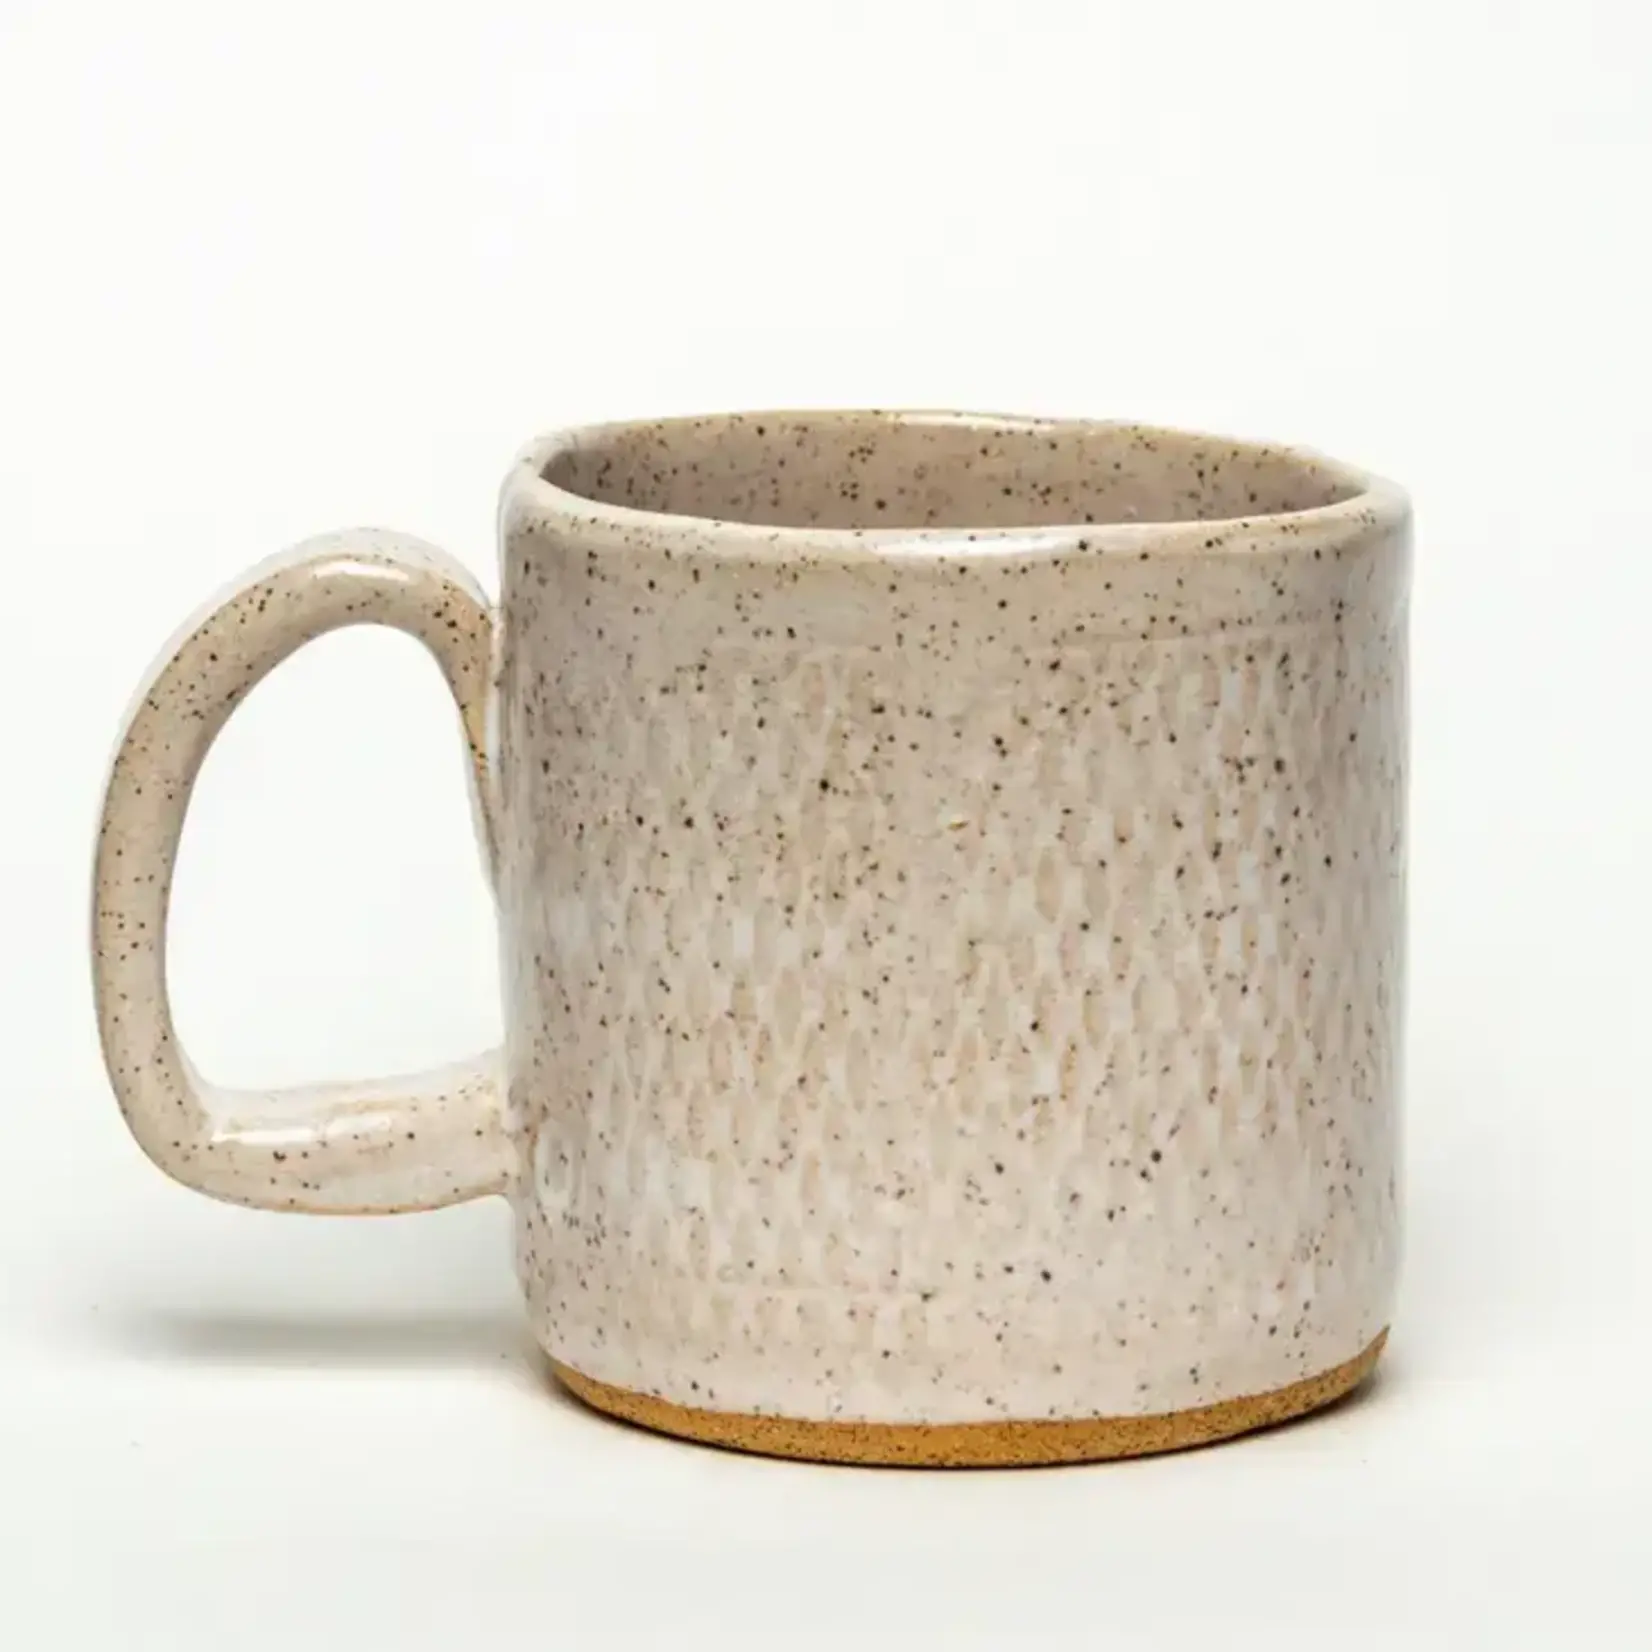 Parrot Mushroom Design Handmade in Ohio, Ceramic 10oz Mug